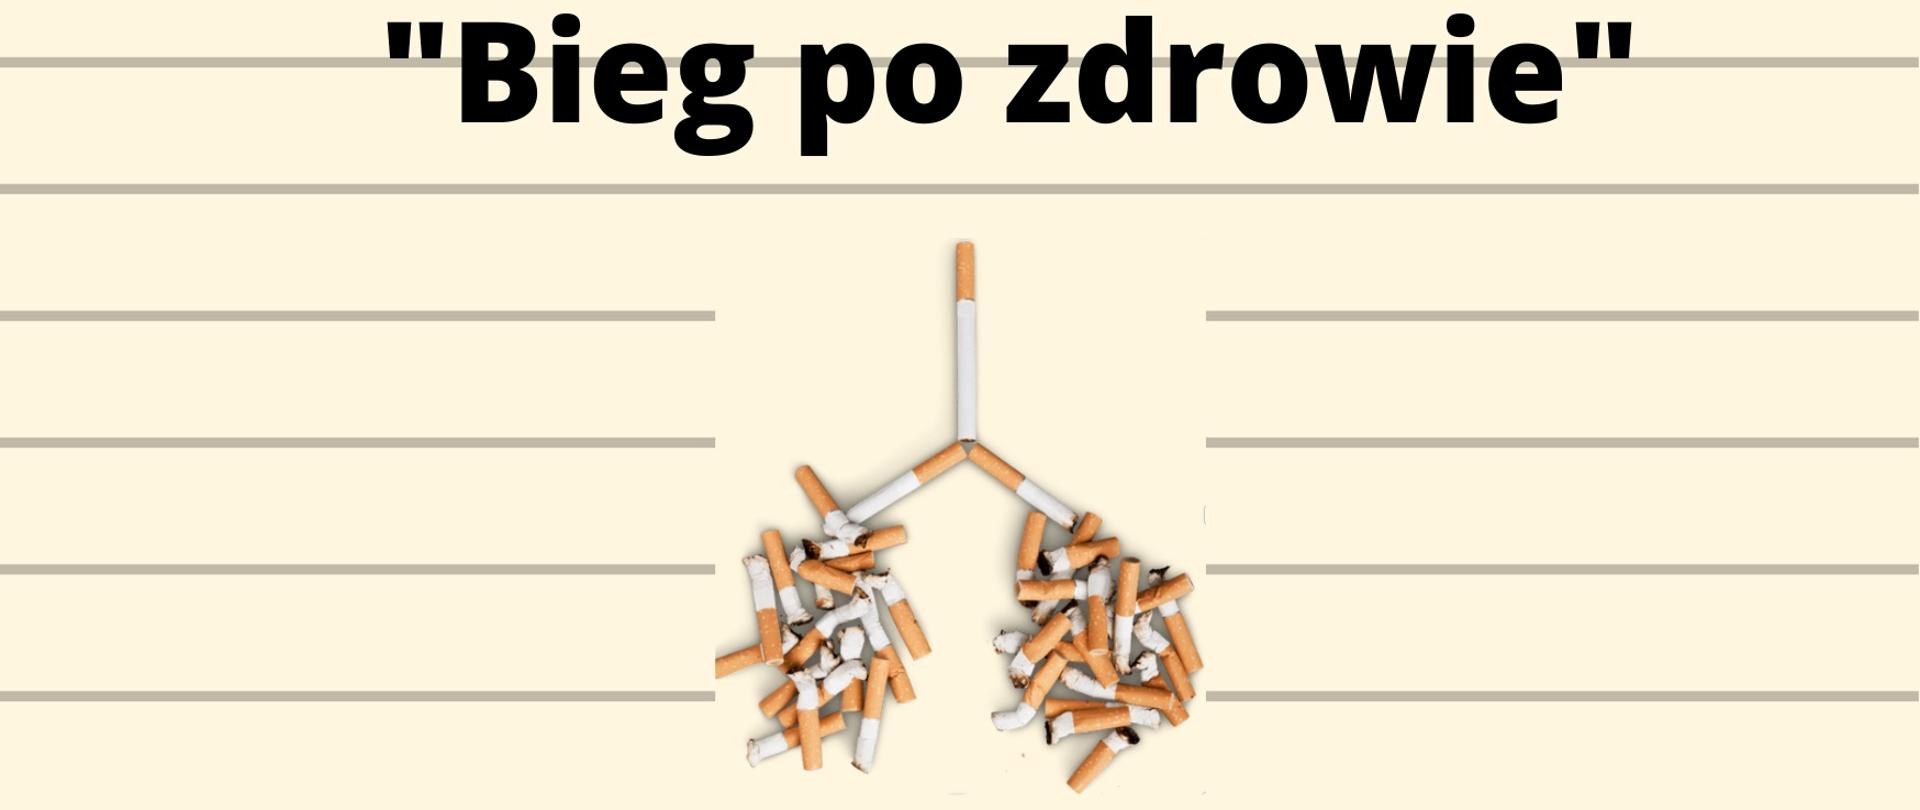 Grafika konkursowa "Bieg po zdrowie" przedstawia płuca zrobione z niedopałków papierosów.